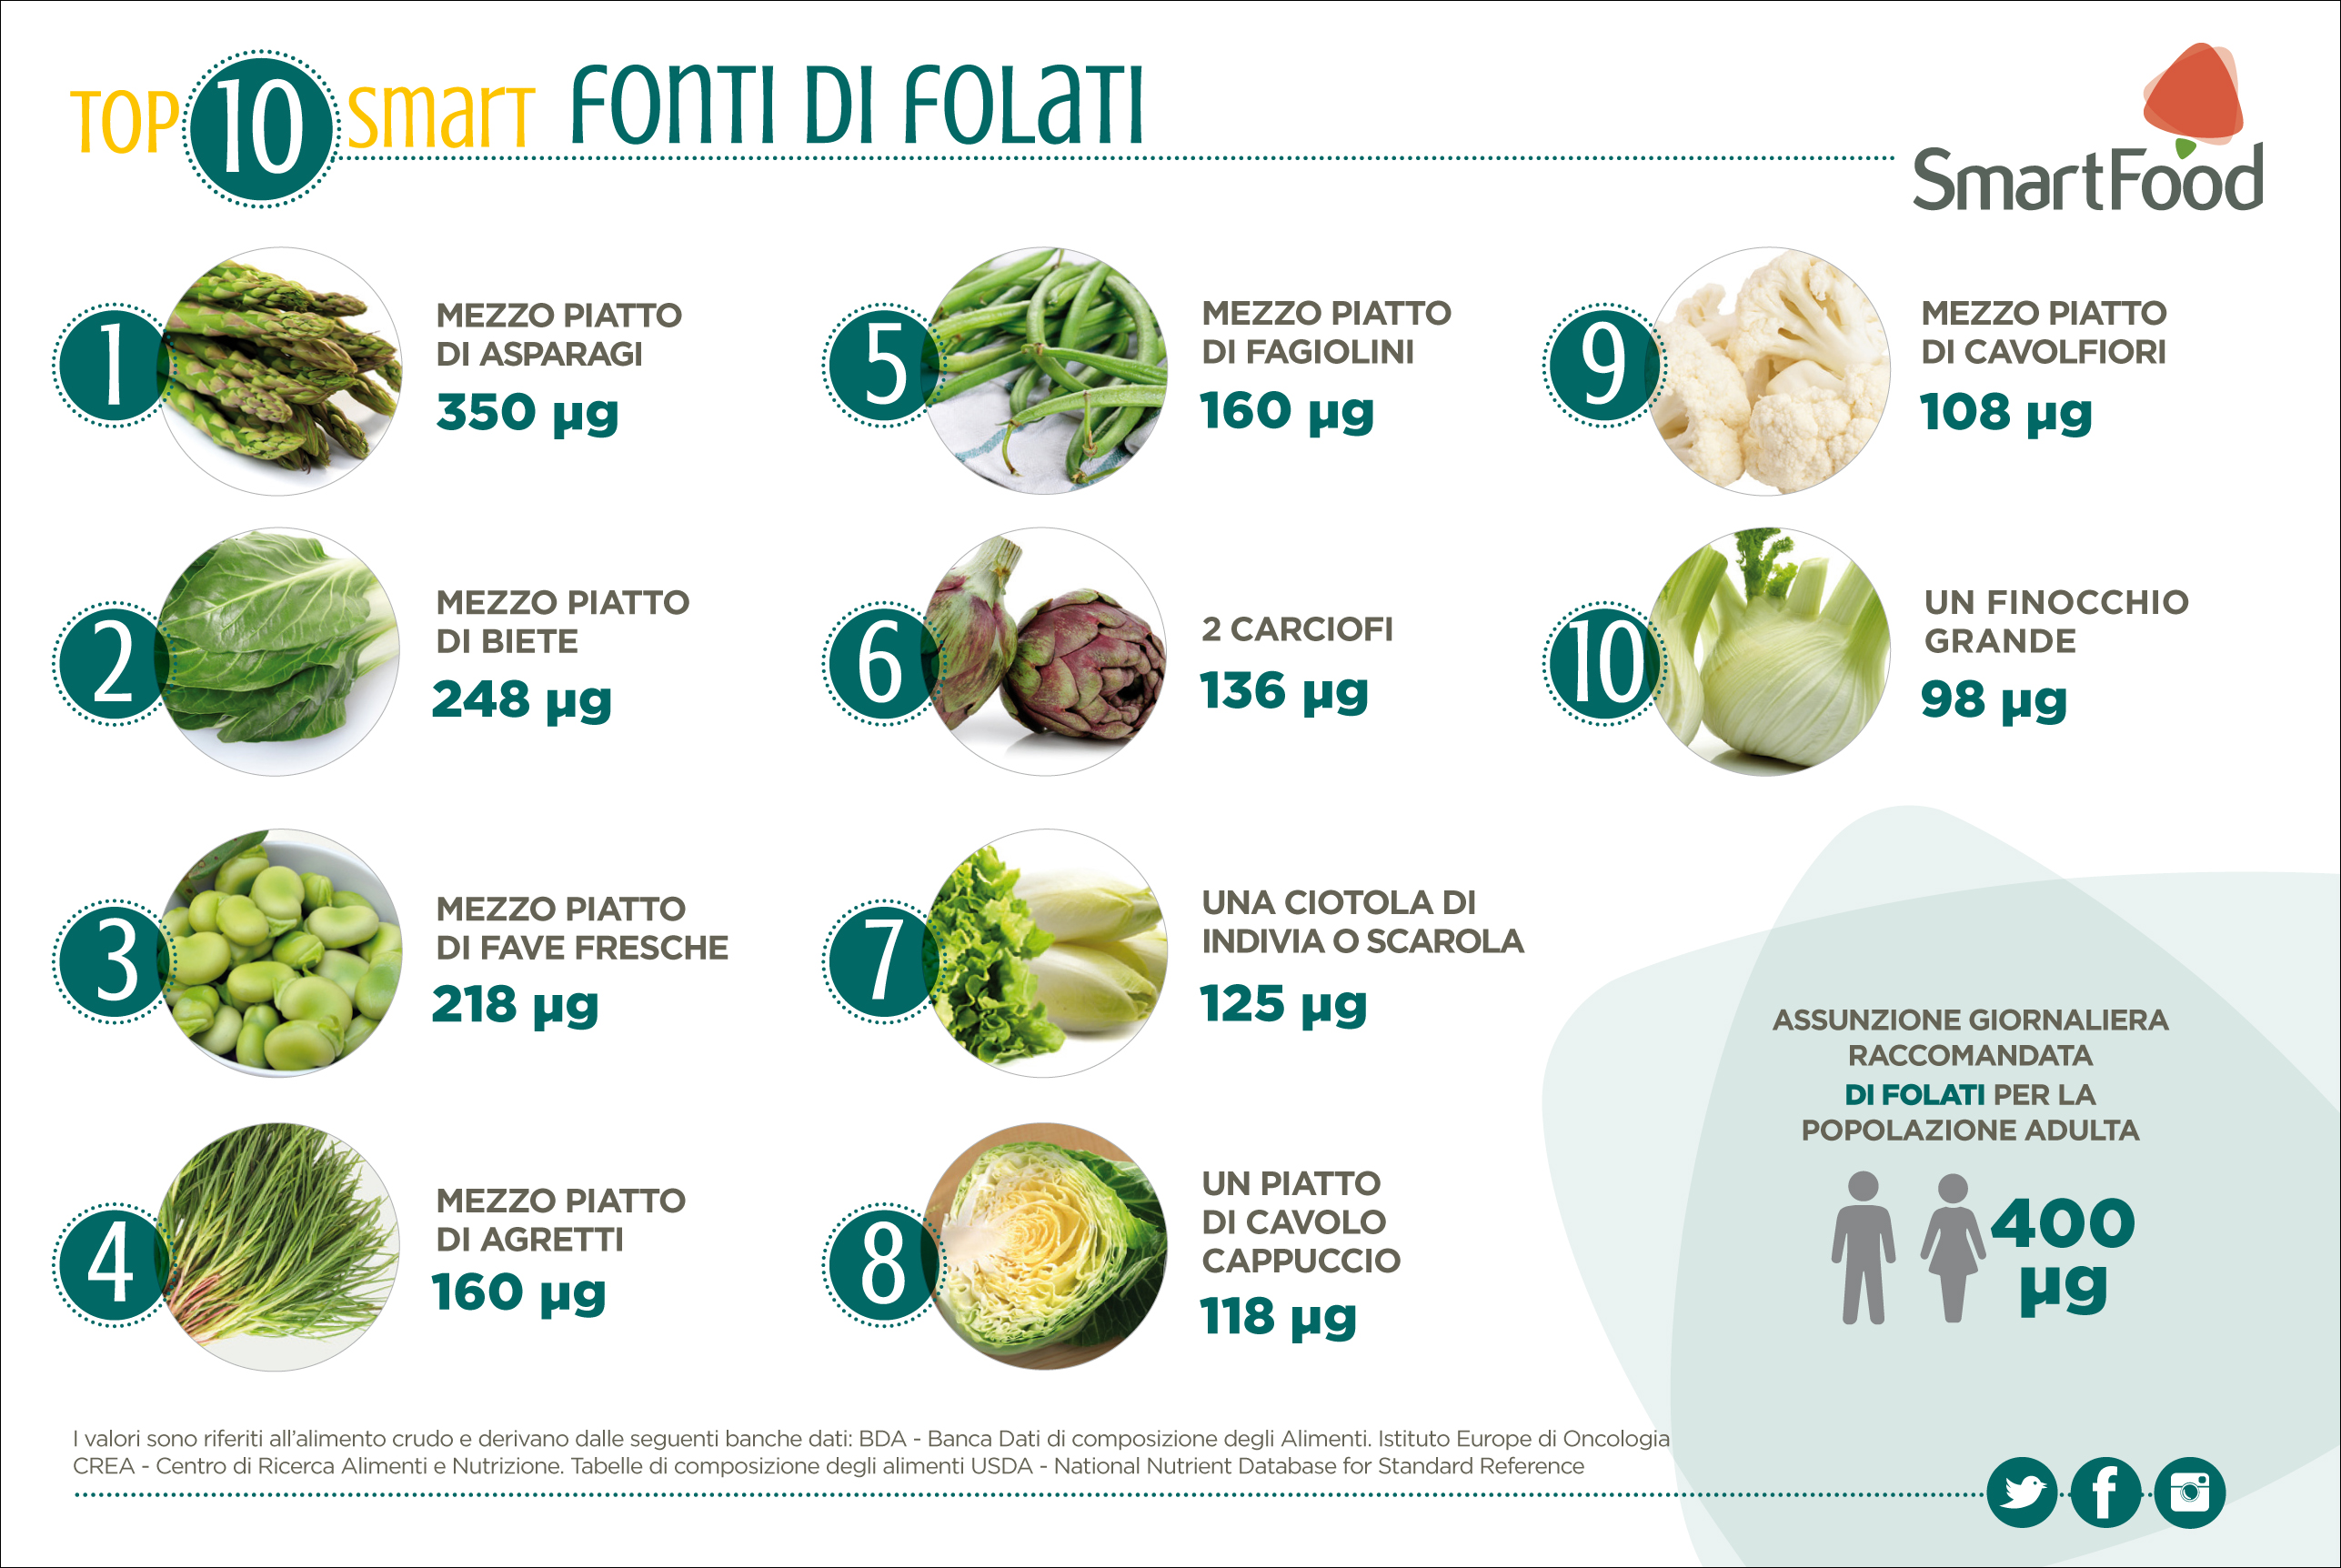 TOP10_FONTI_DI_FOLATI.jpg